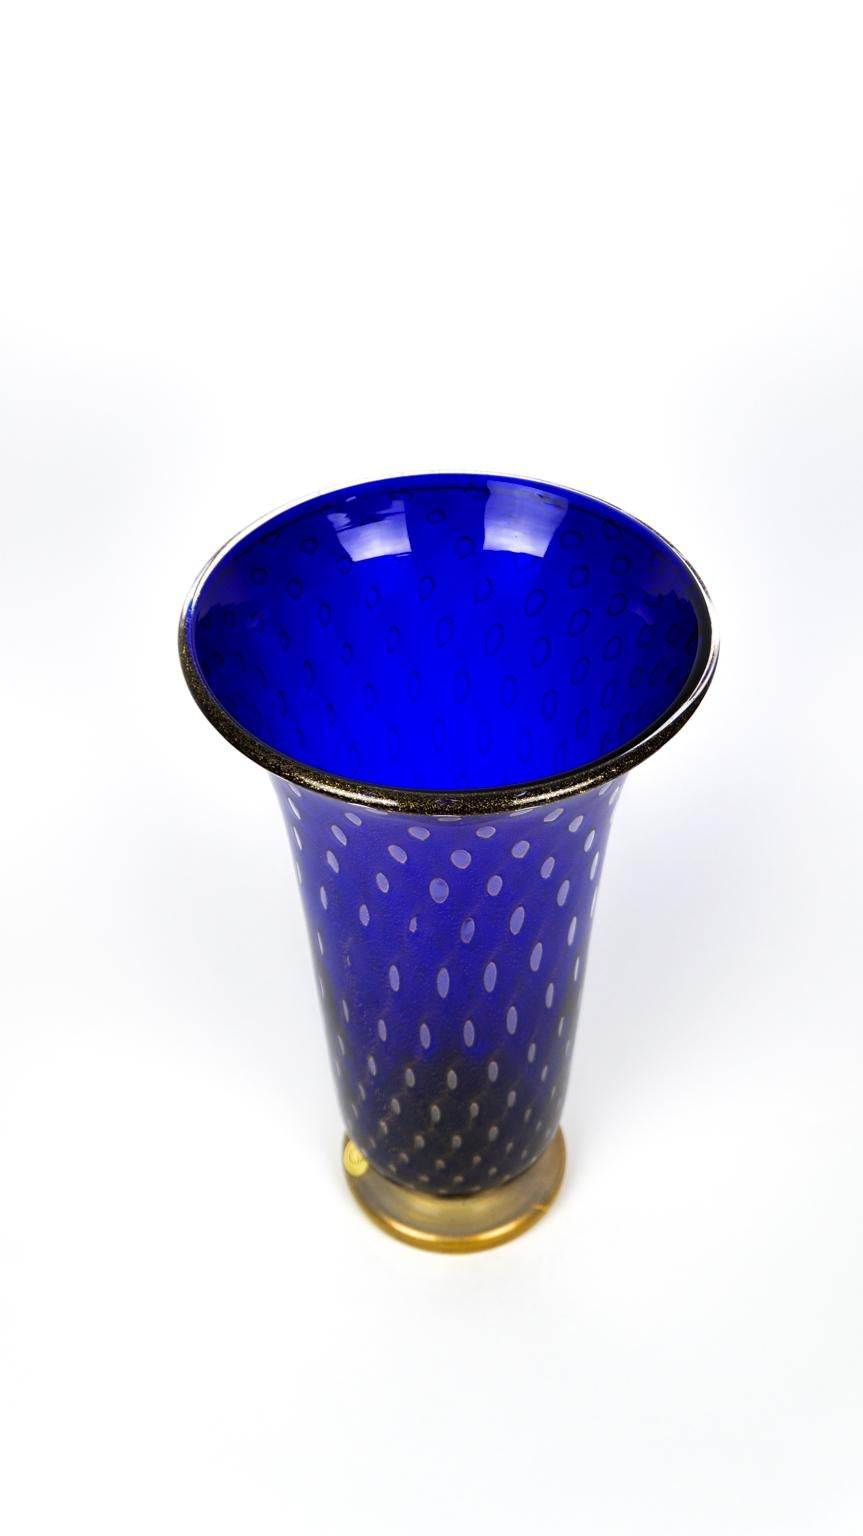 Art Deco Blue Gold Design Italian Art Glass Vase by Stefano Mattiello For Sale 3